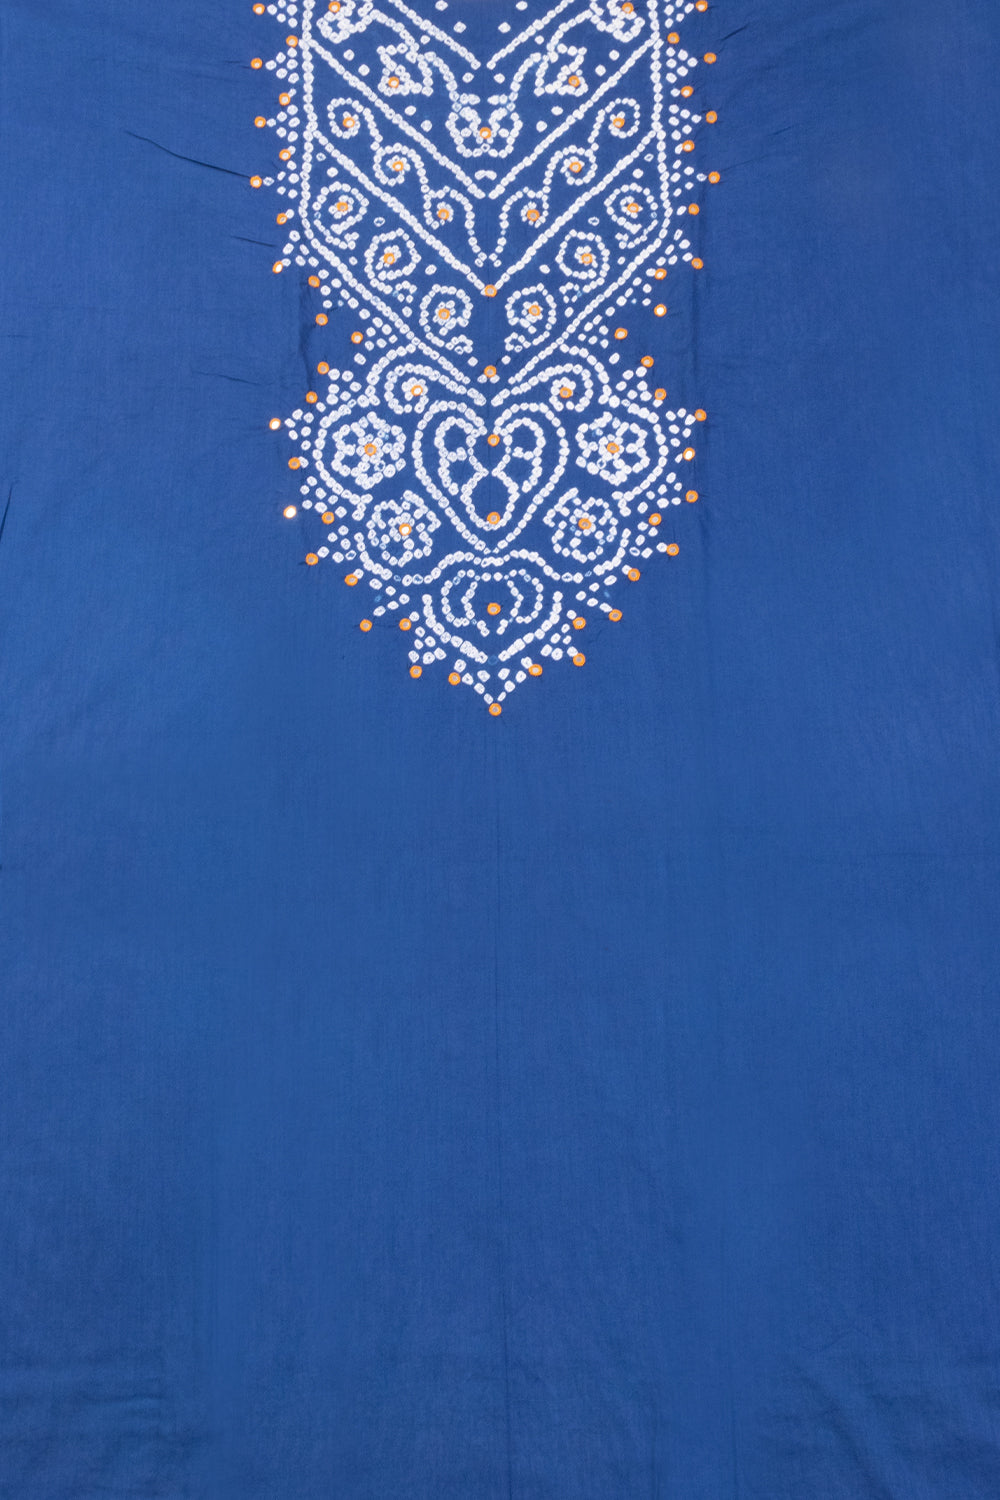 Blue Bandhani Cotton 3-Piece Salwar Suit Material-Avishya